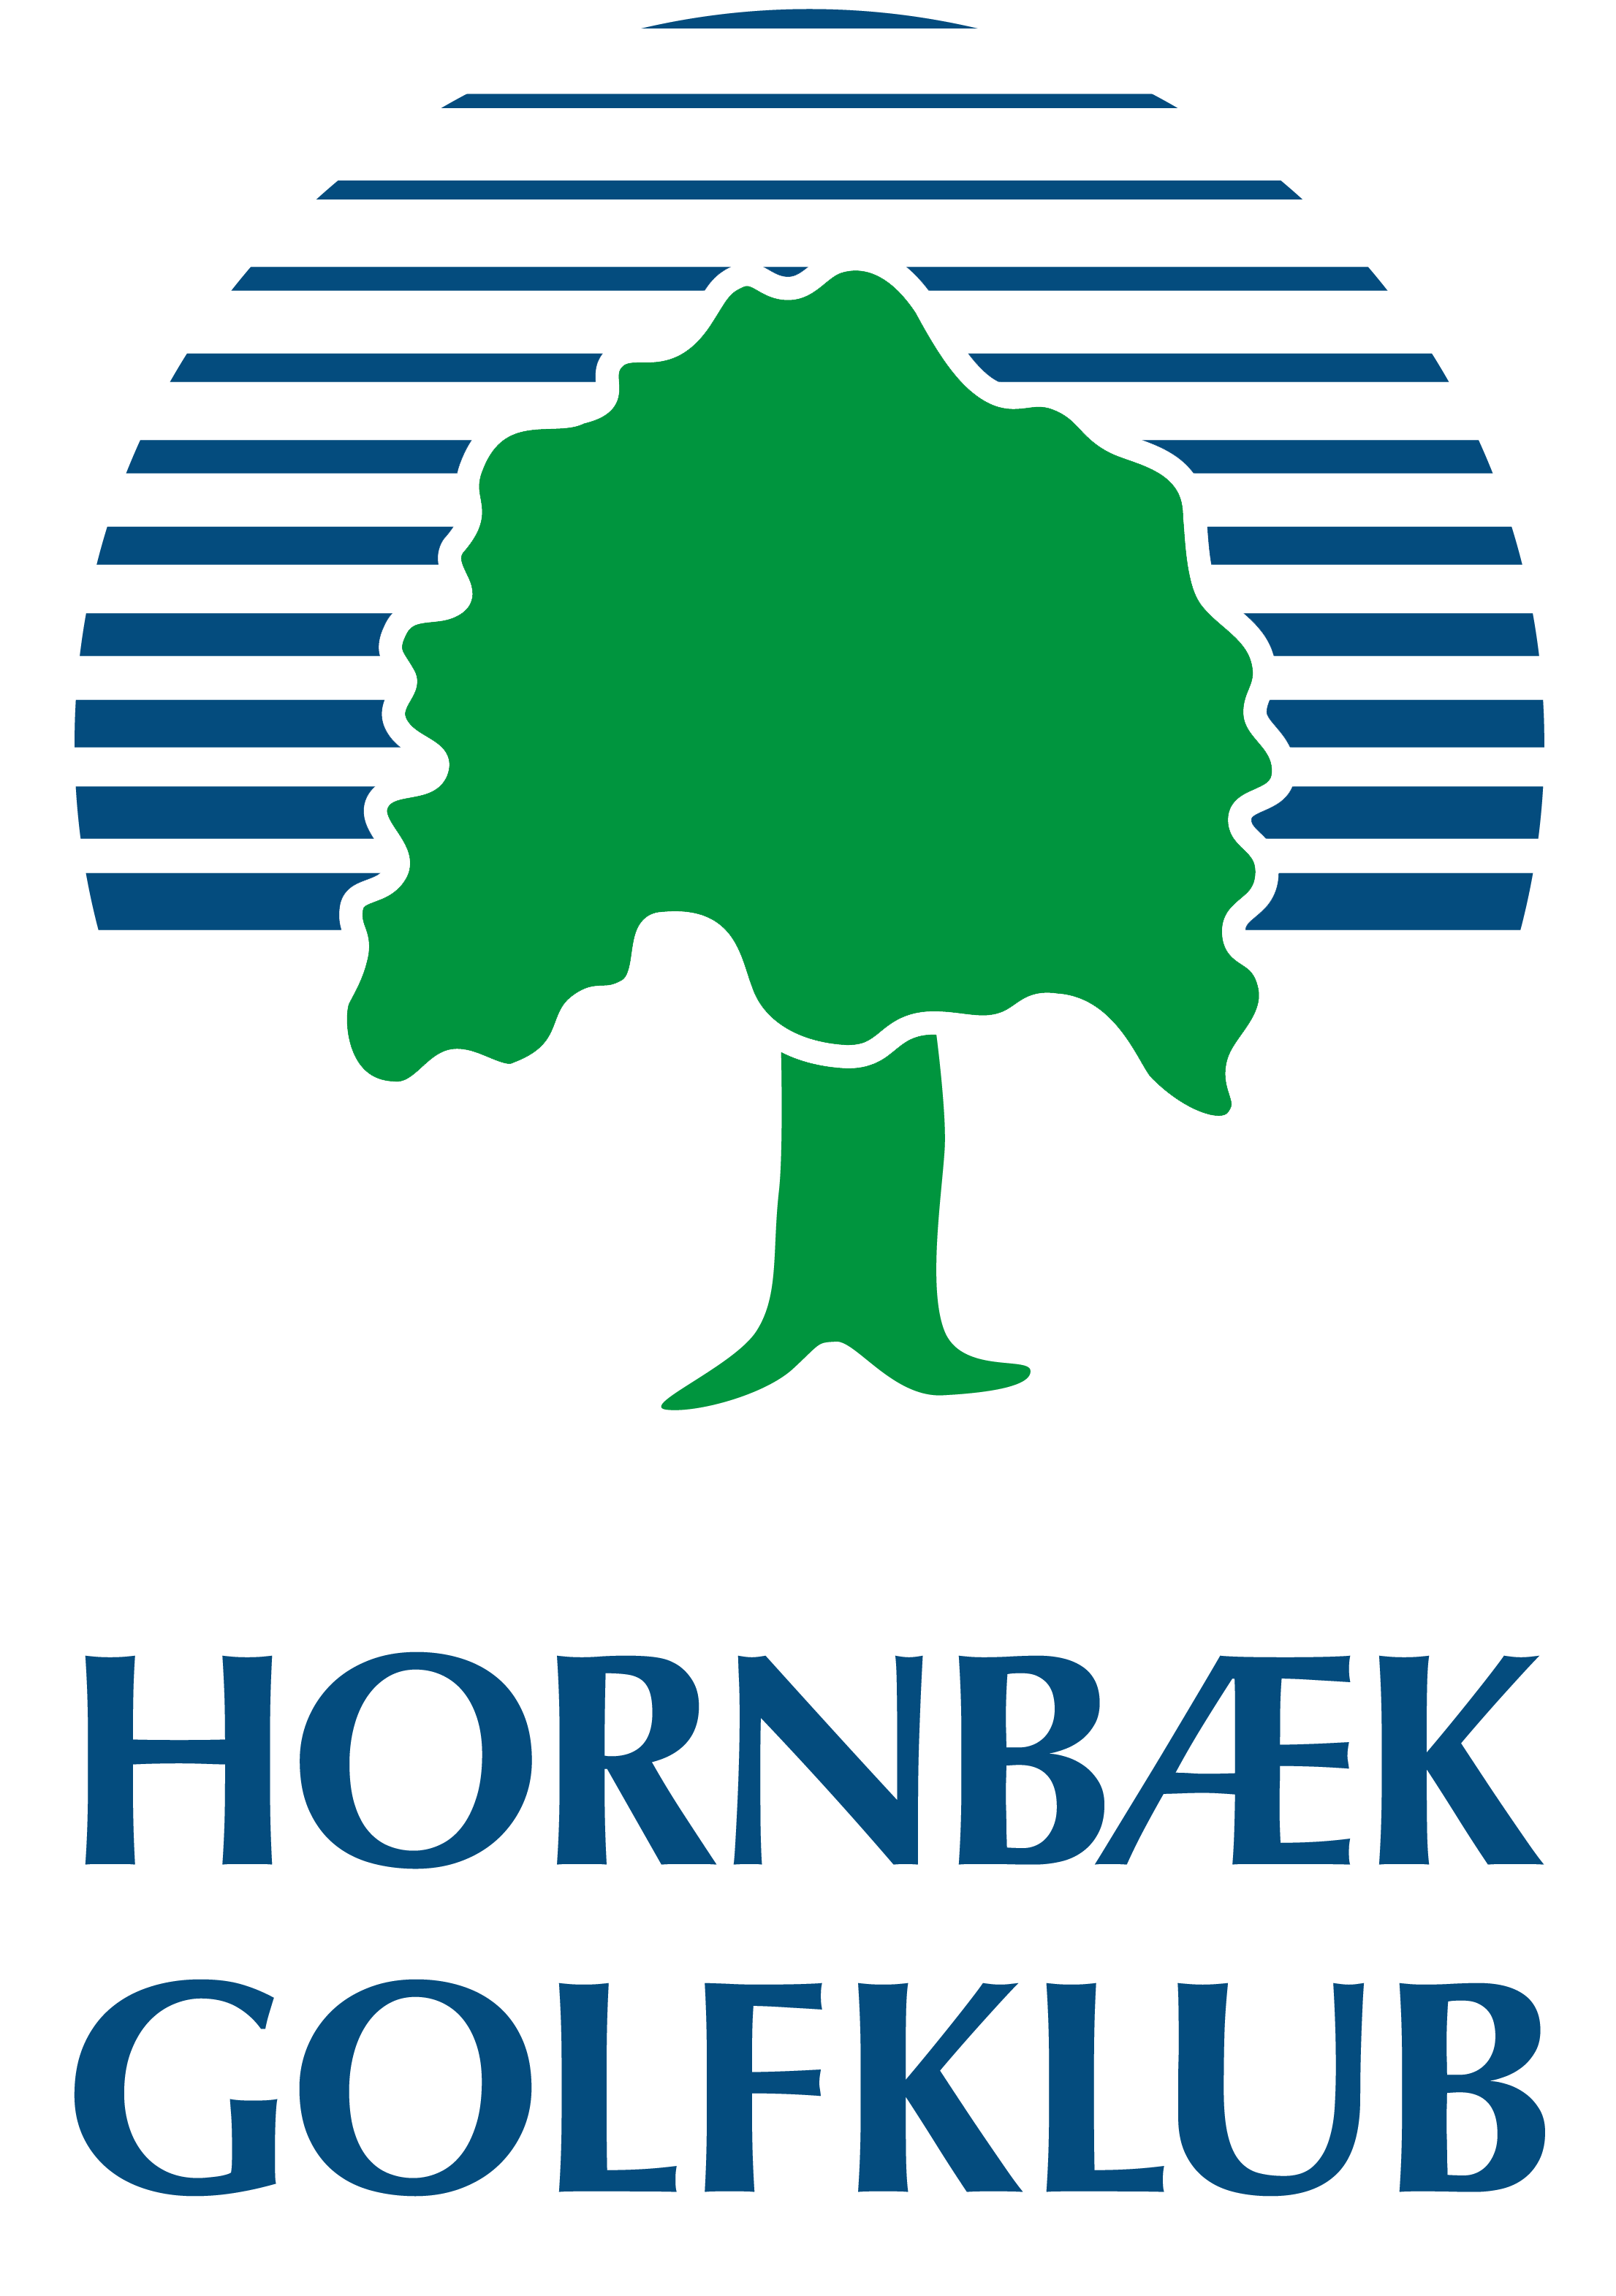 Hornbæk Golfklub